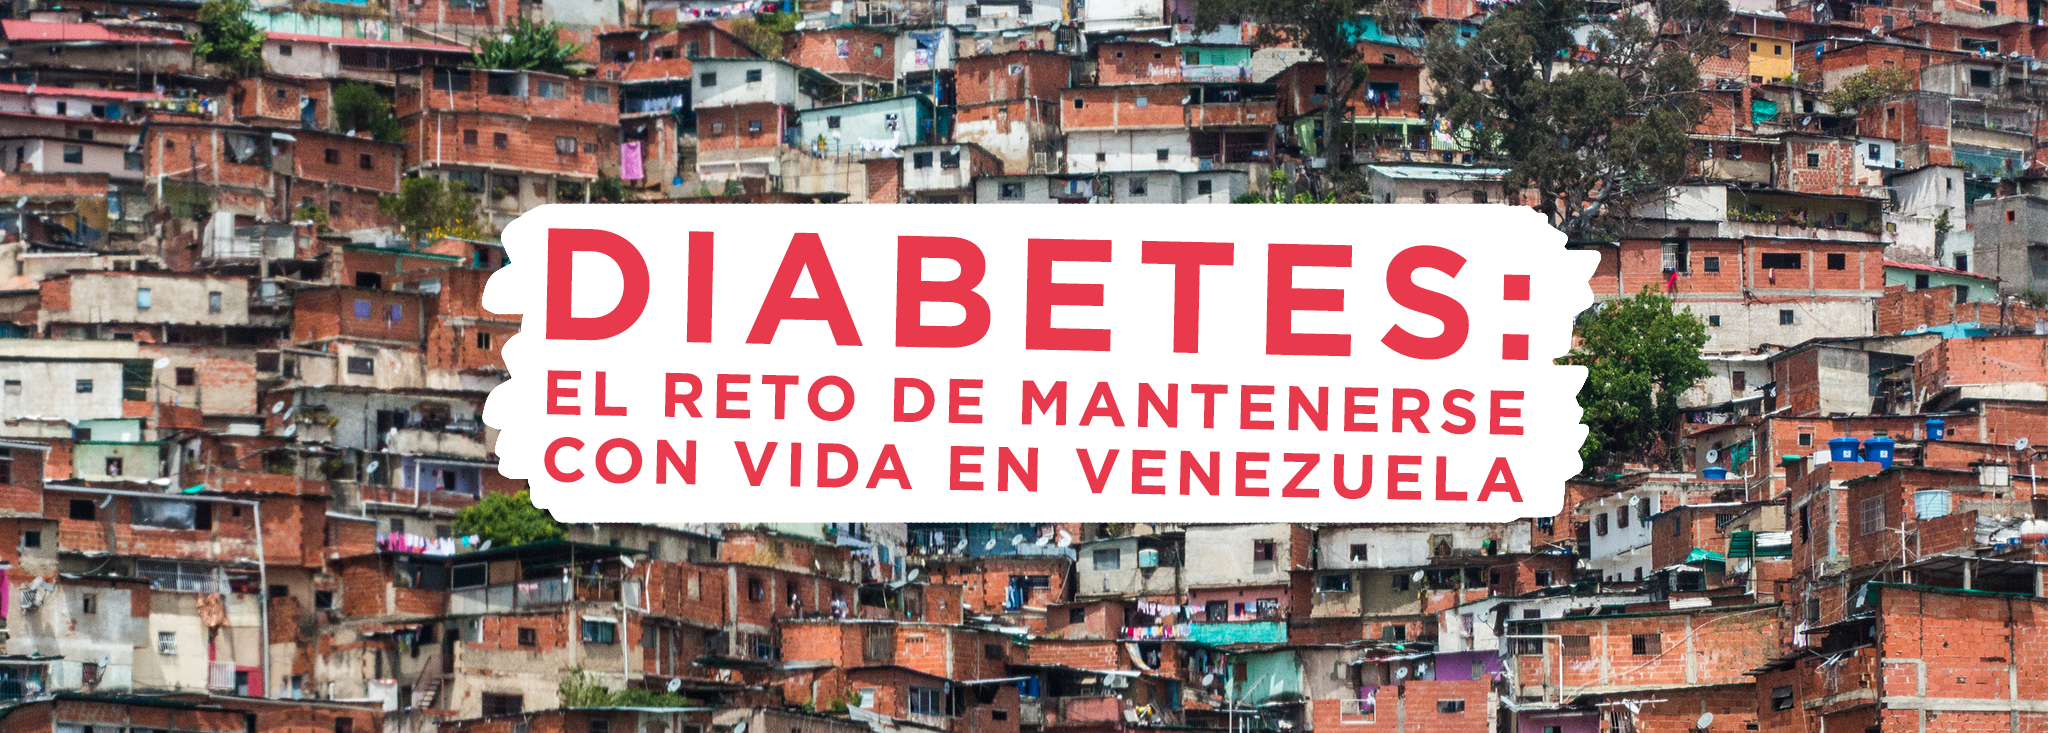 Diabetes: el reto de mantenerse con vida en Venezuela